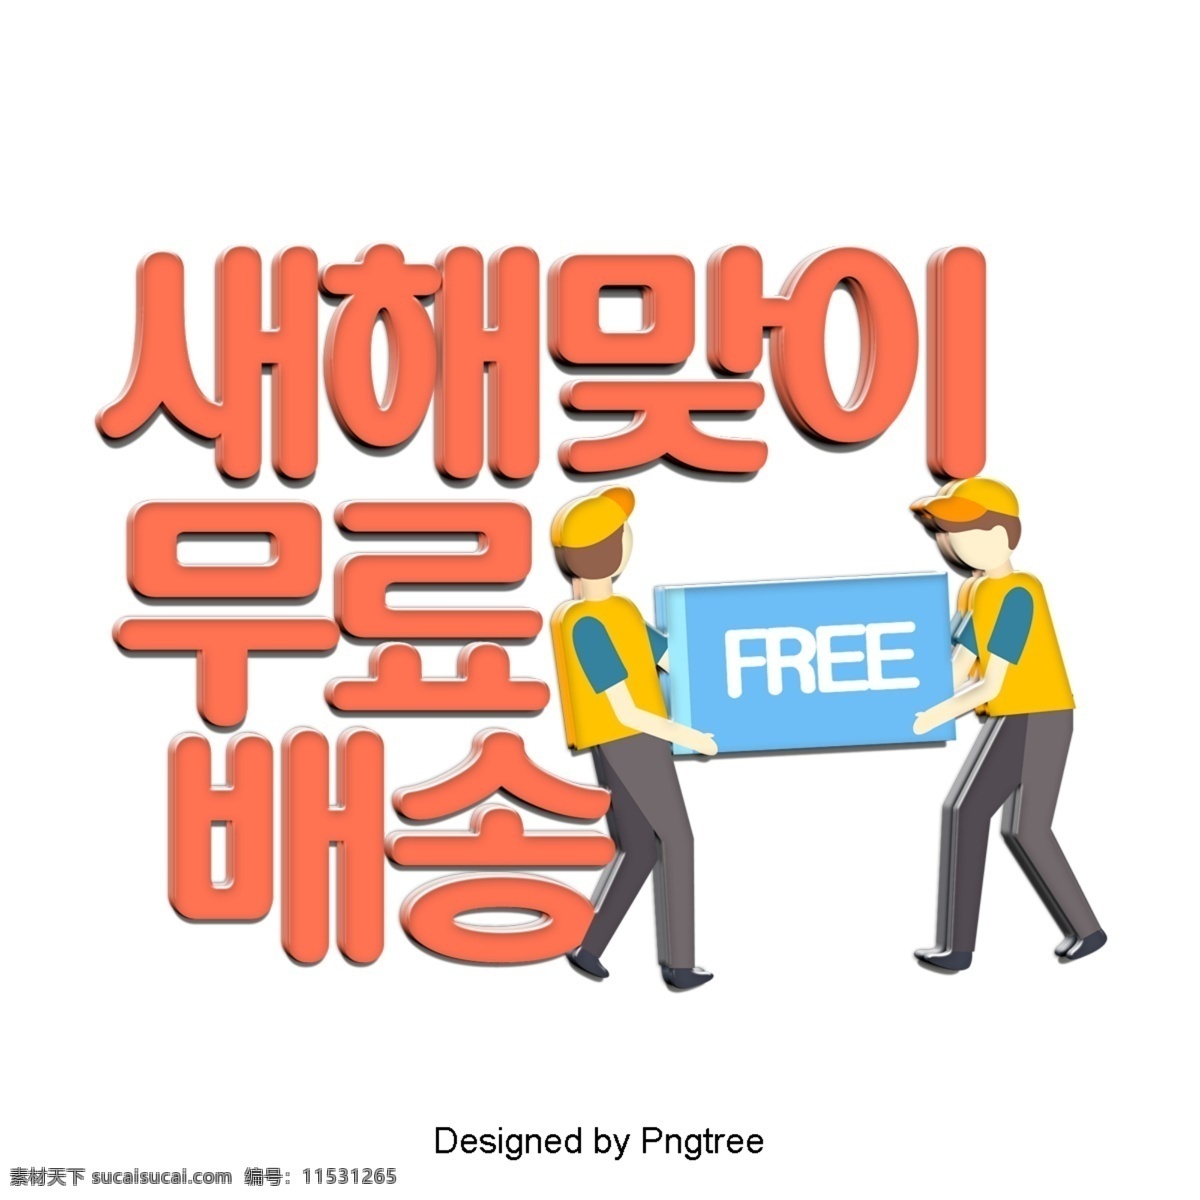 欢迎 来自 韩国 新年 免费送货 时尚 卡通 场景 分子 装饰 字形 现场 立体 动画片 简单 色彩艺术 通讯数据 的分布